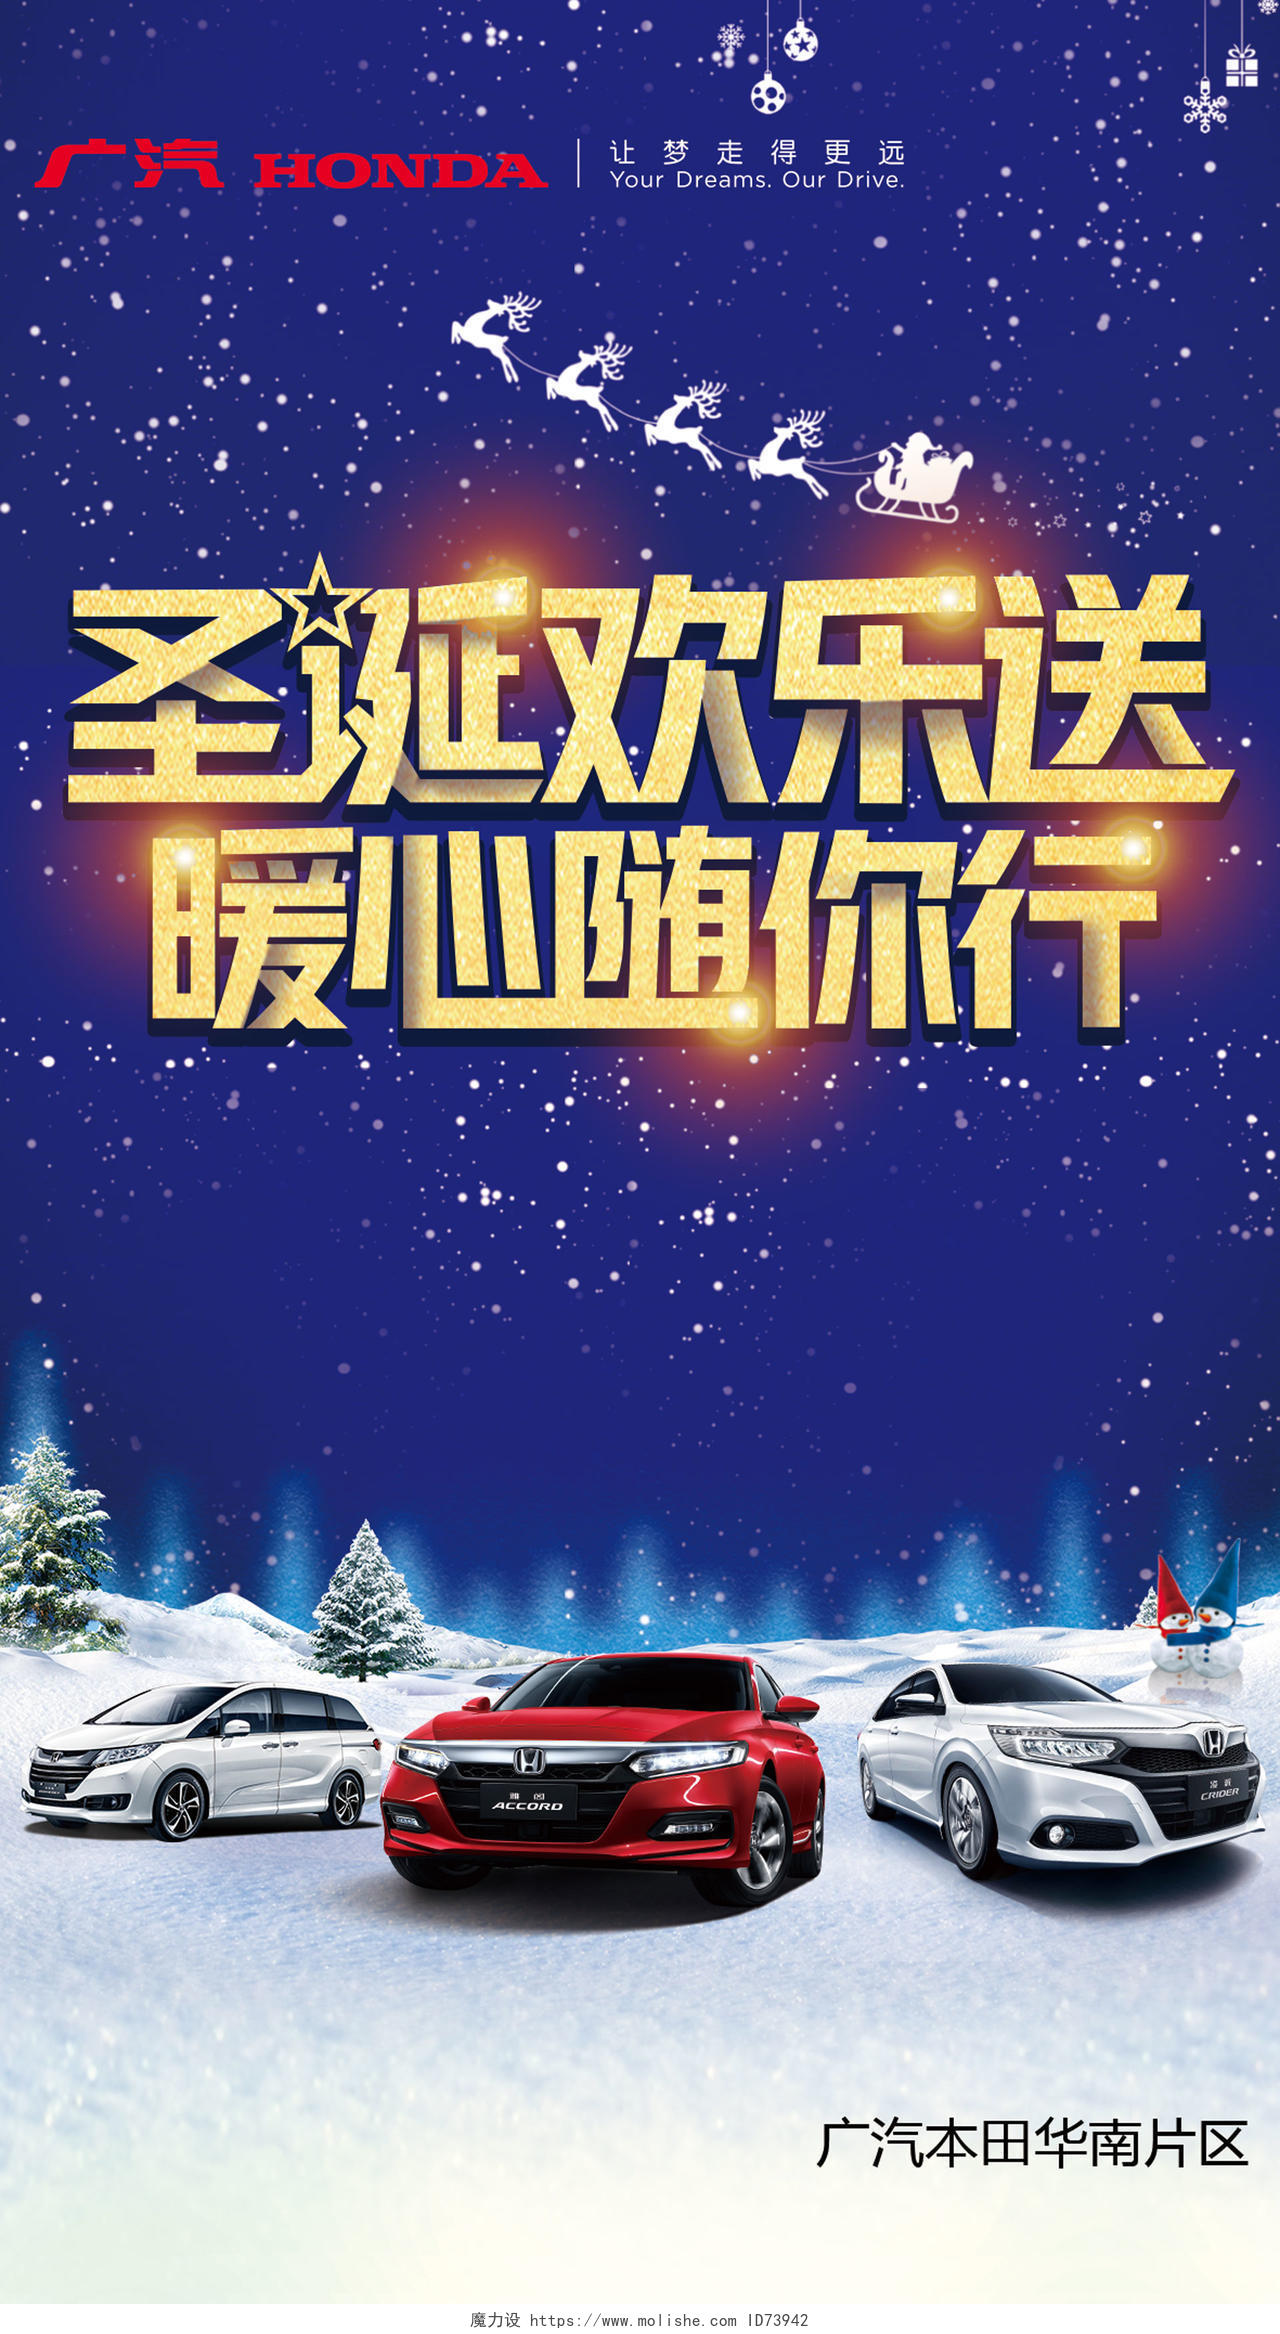 圣诞欢乐颂暖心随你行汽车促销海报设计